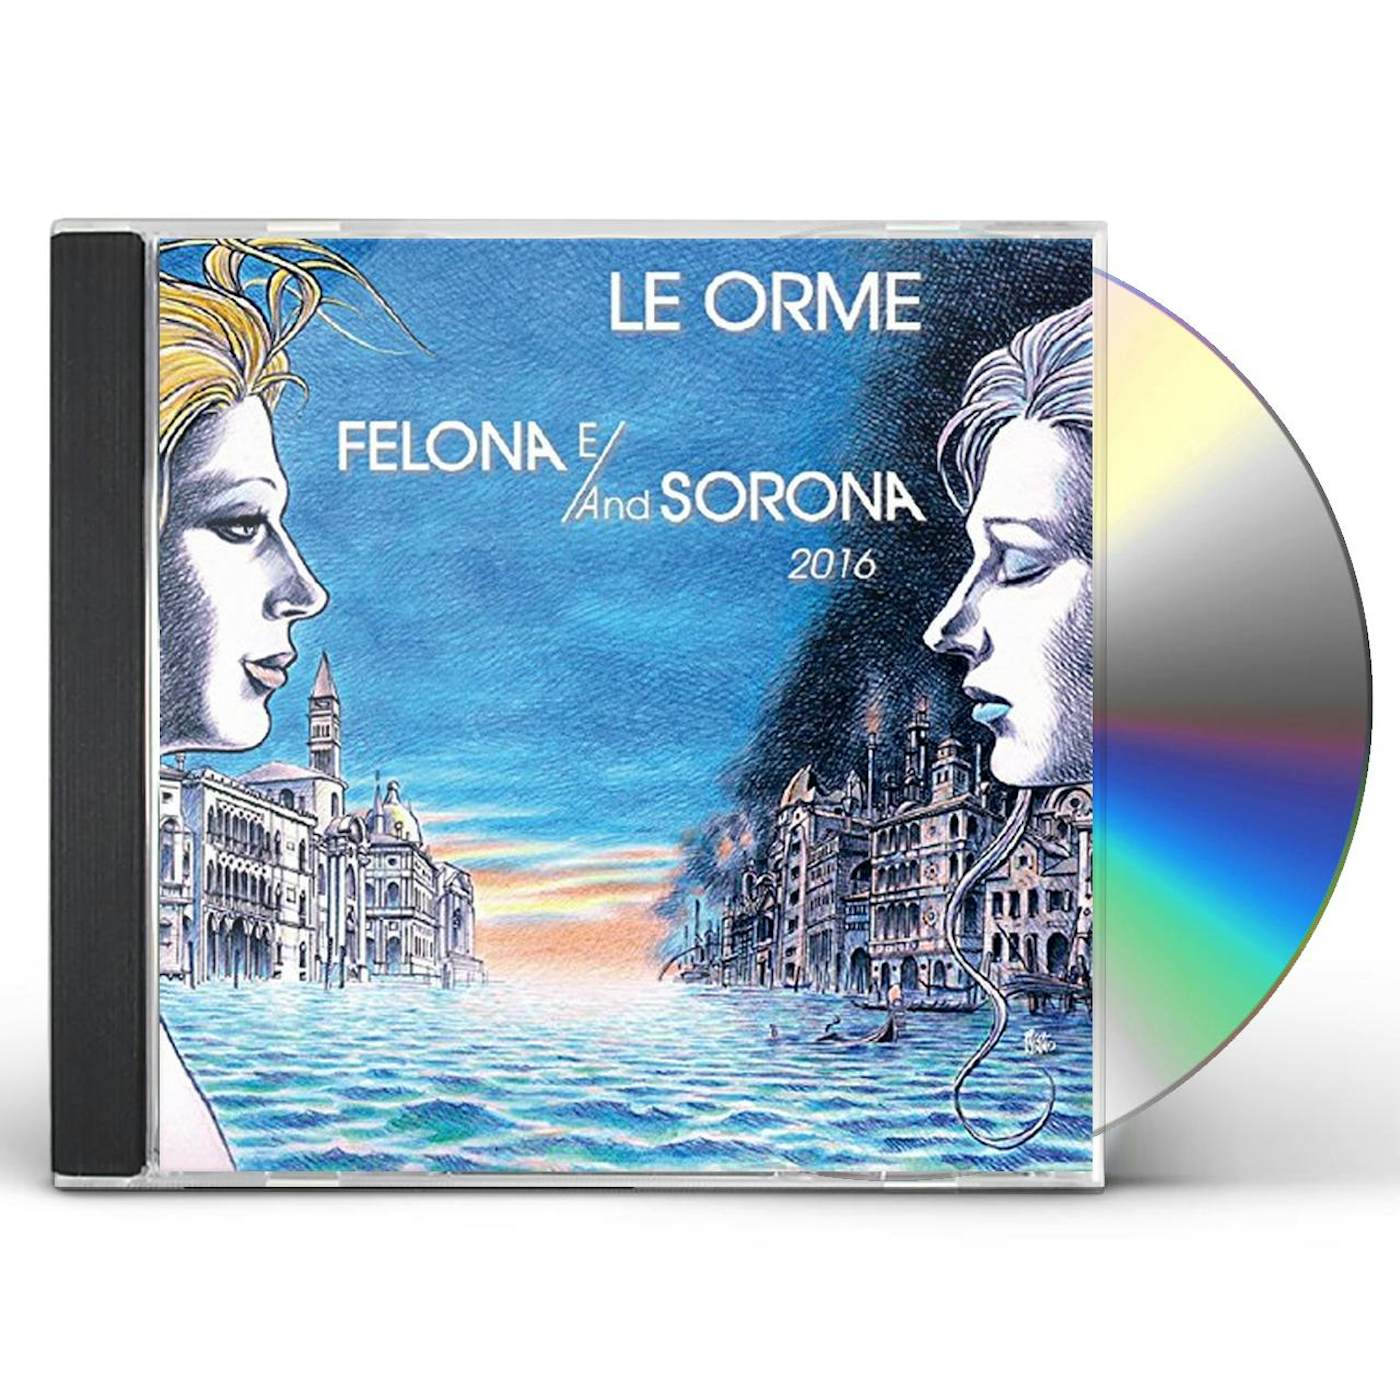 Le Orme FELONA E/AND SOLONA 2016 CD